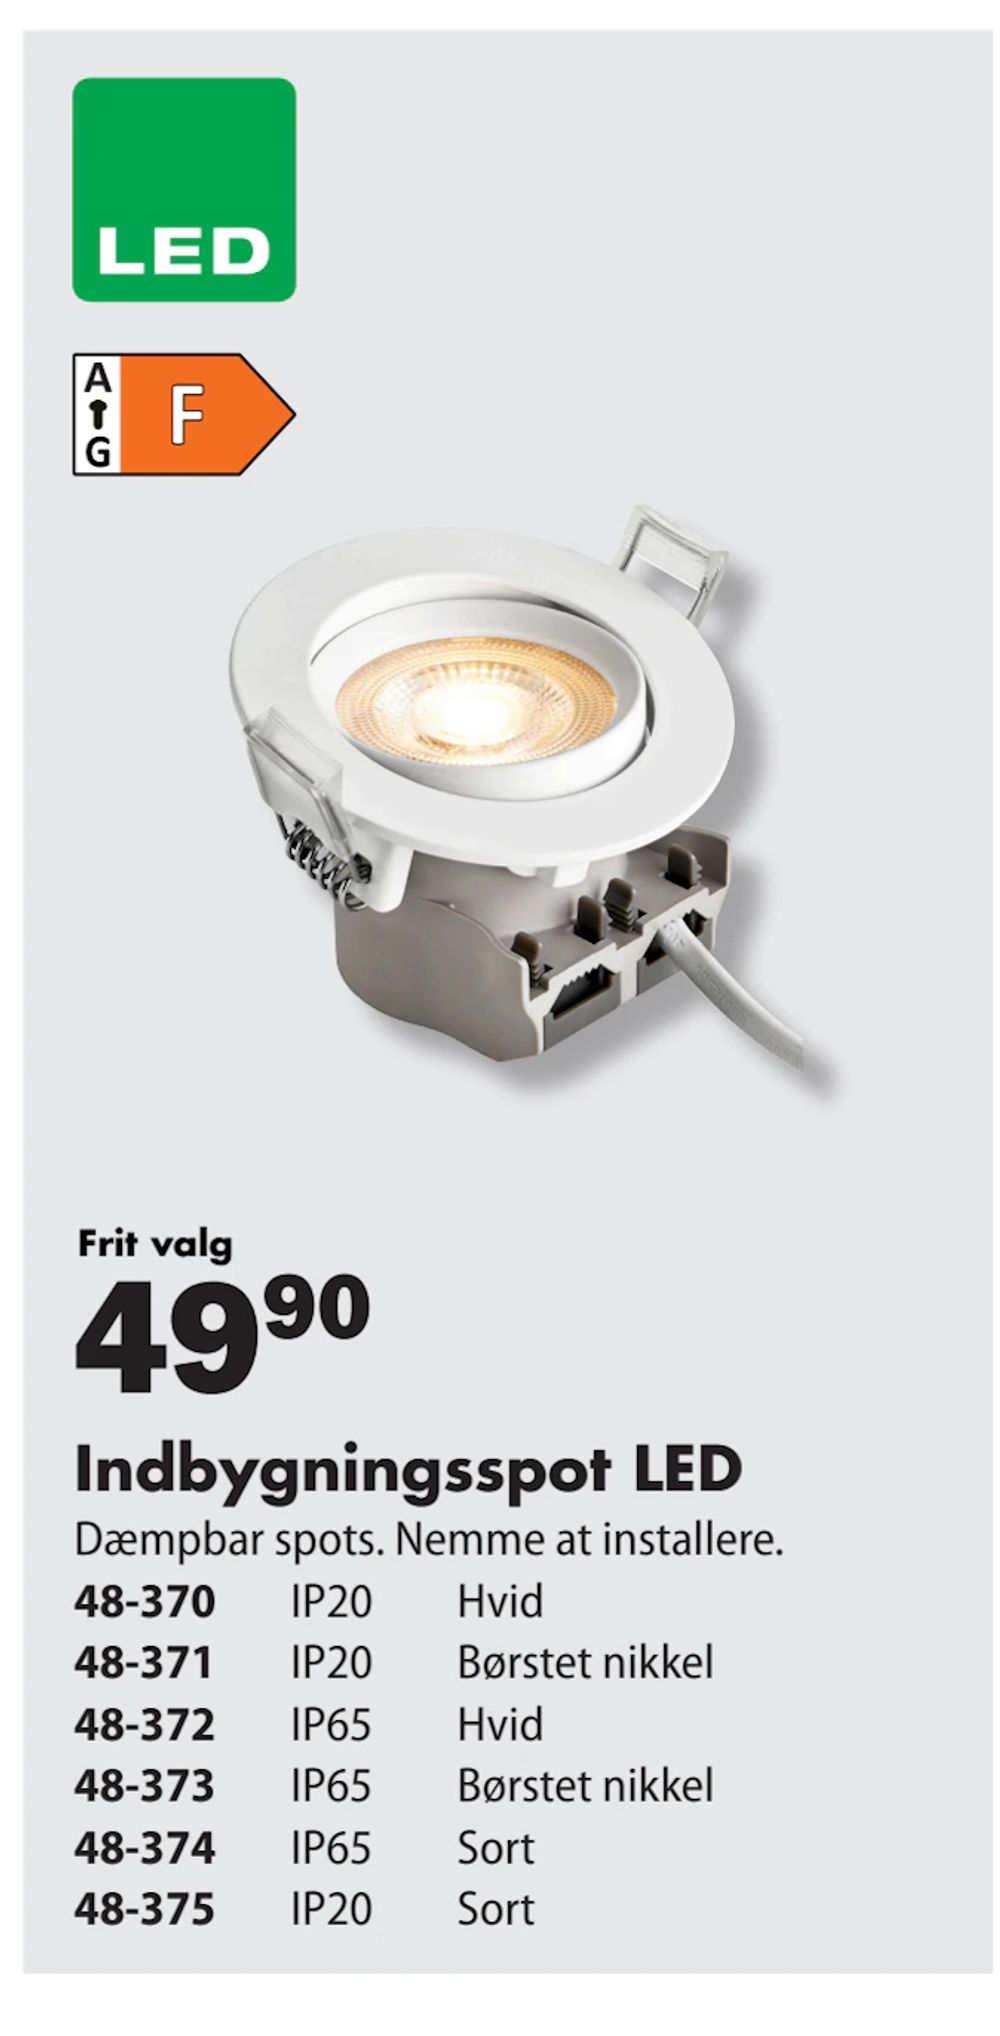 Tilbud på Indbygningsspot LED fra Biltema til 49,90 kr.